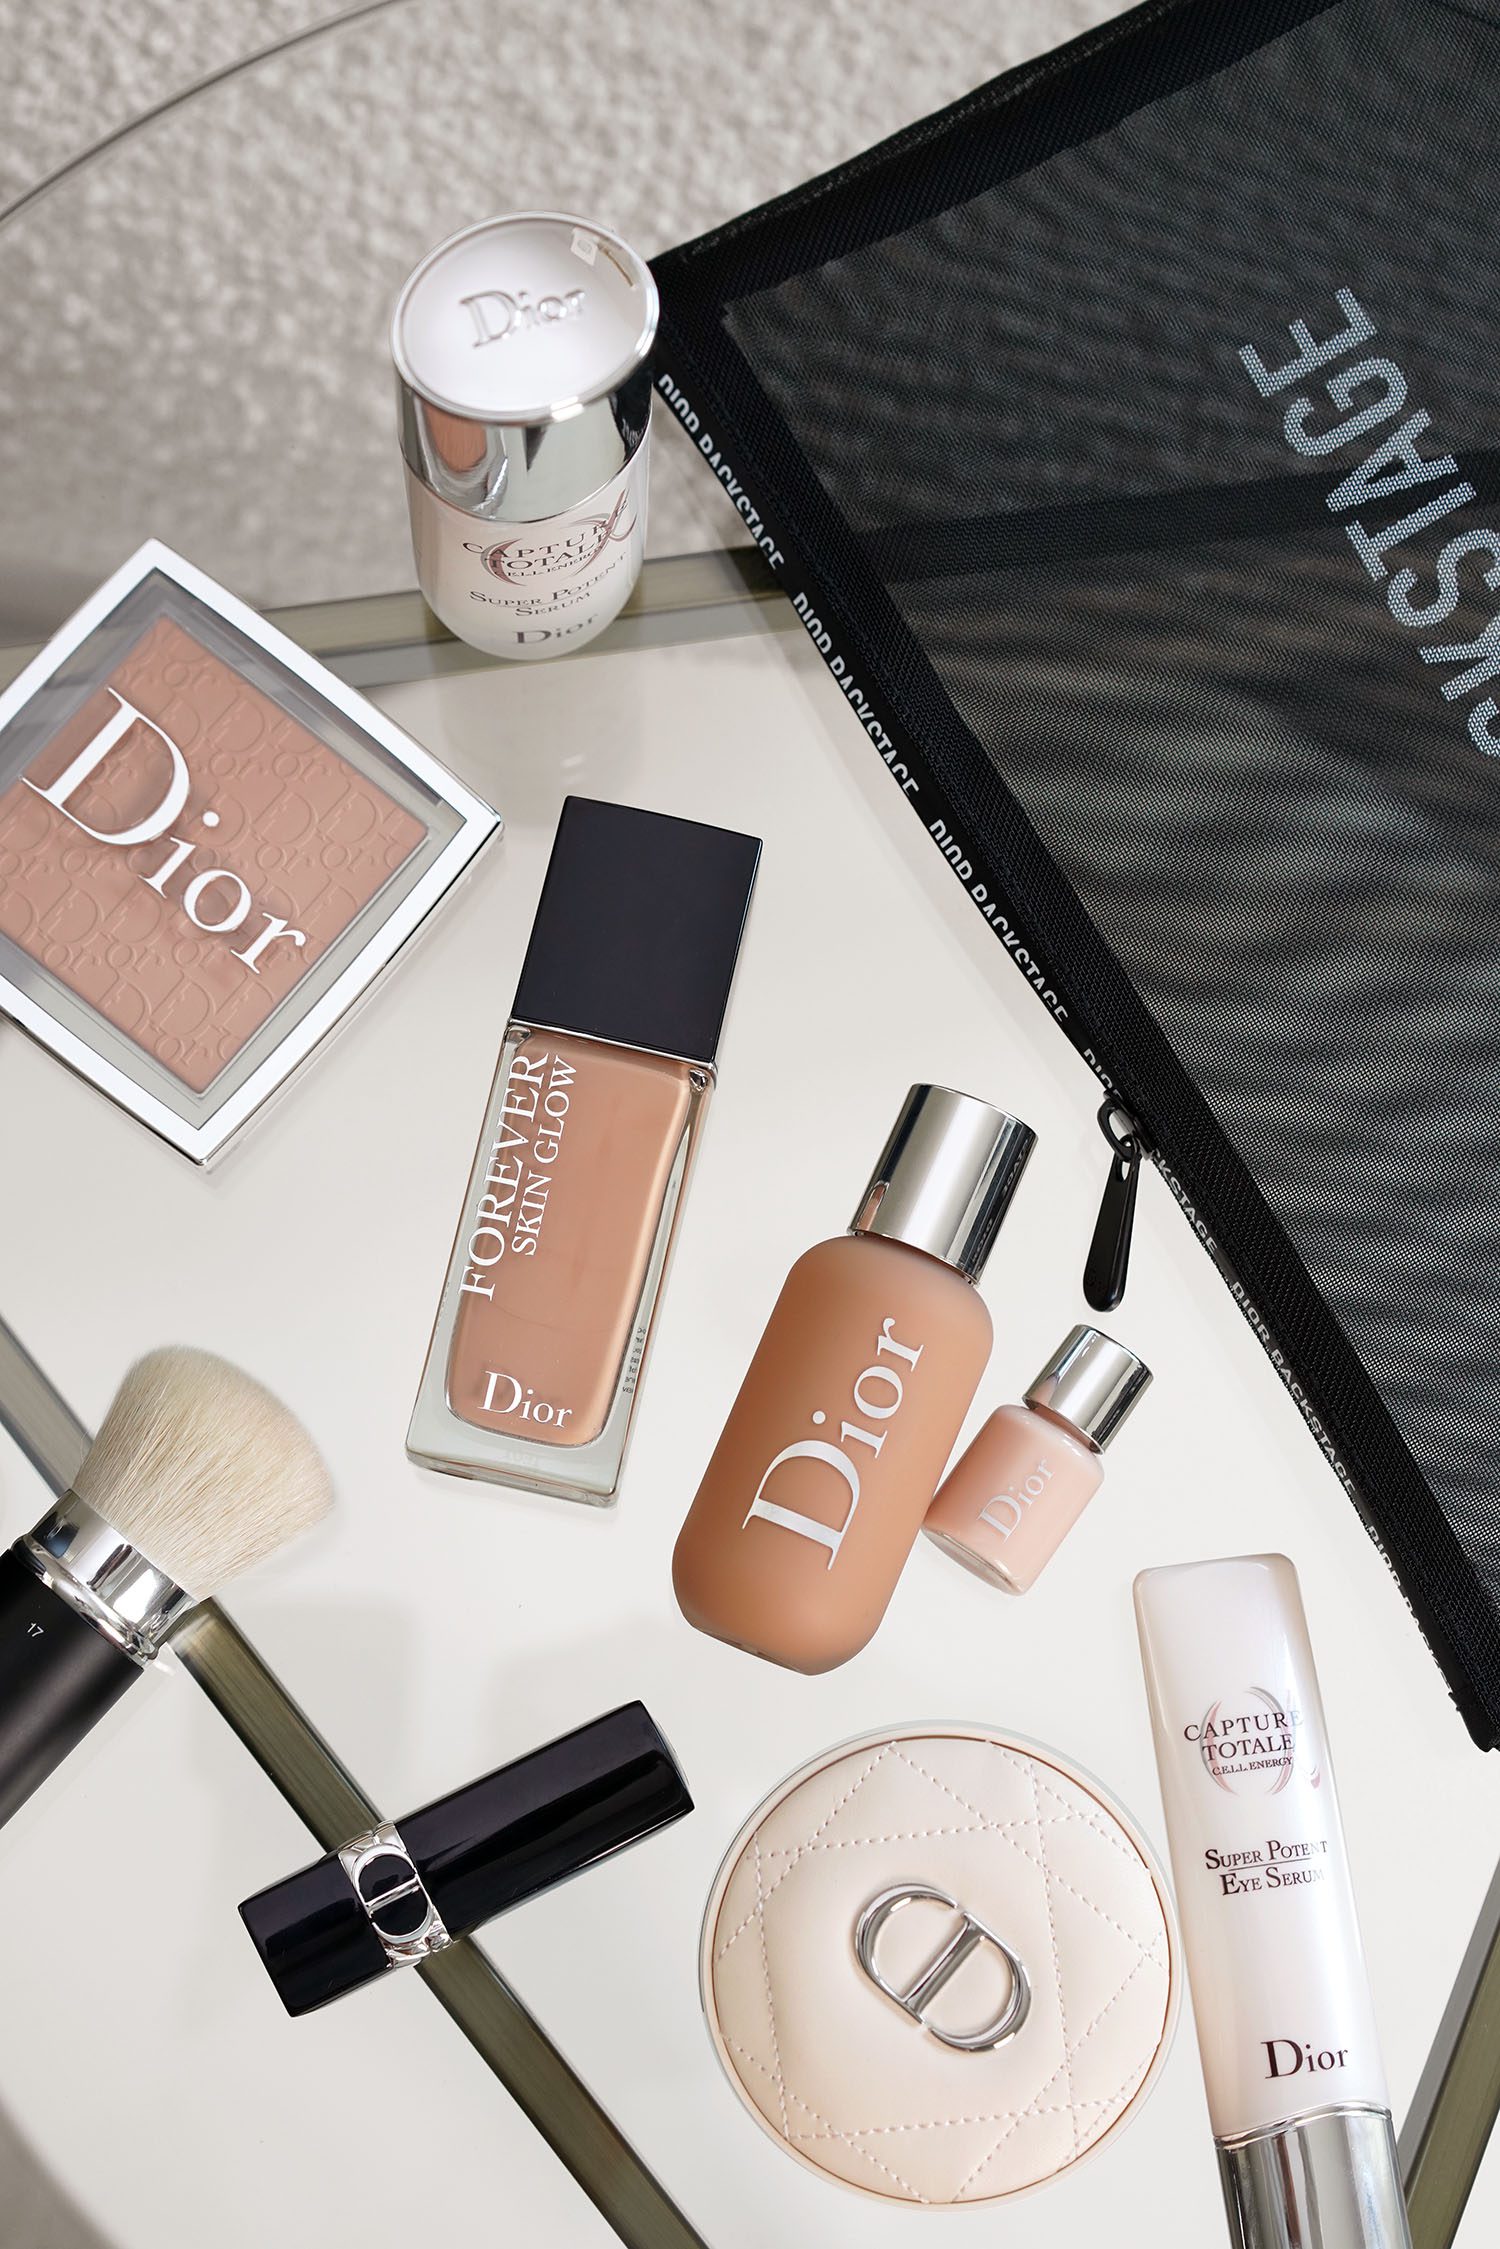 Tradition I mængde Gentage sig Dior Makeup Favorites - The Beauty Look Book